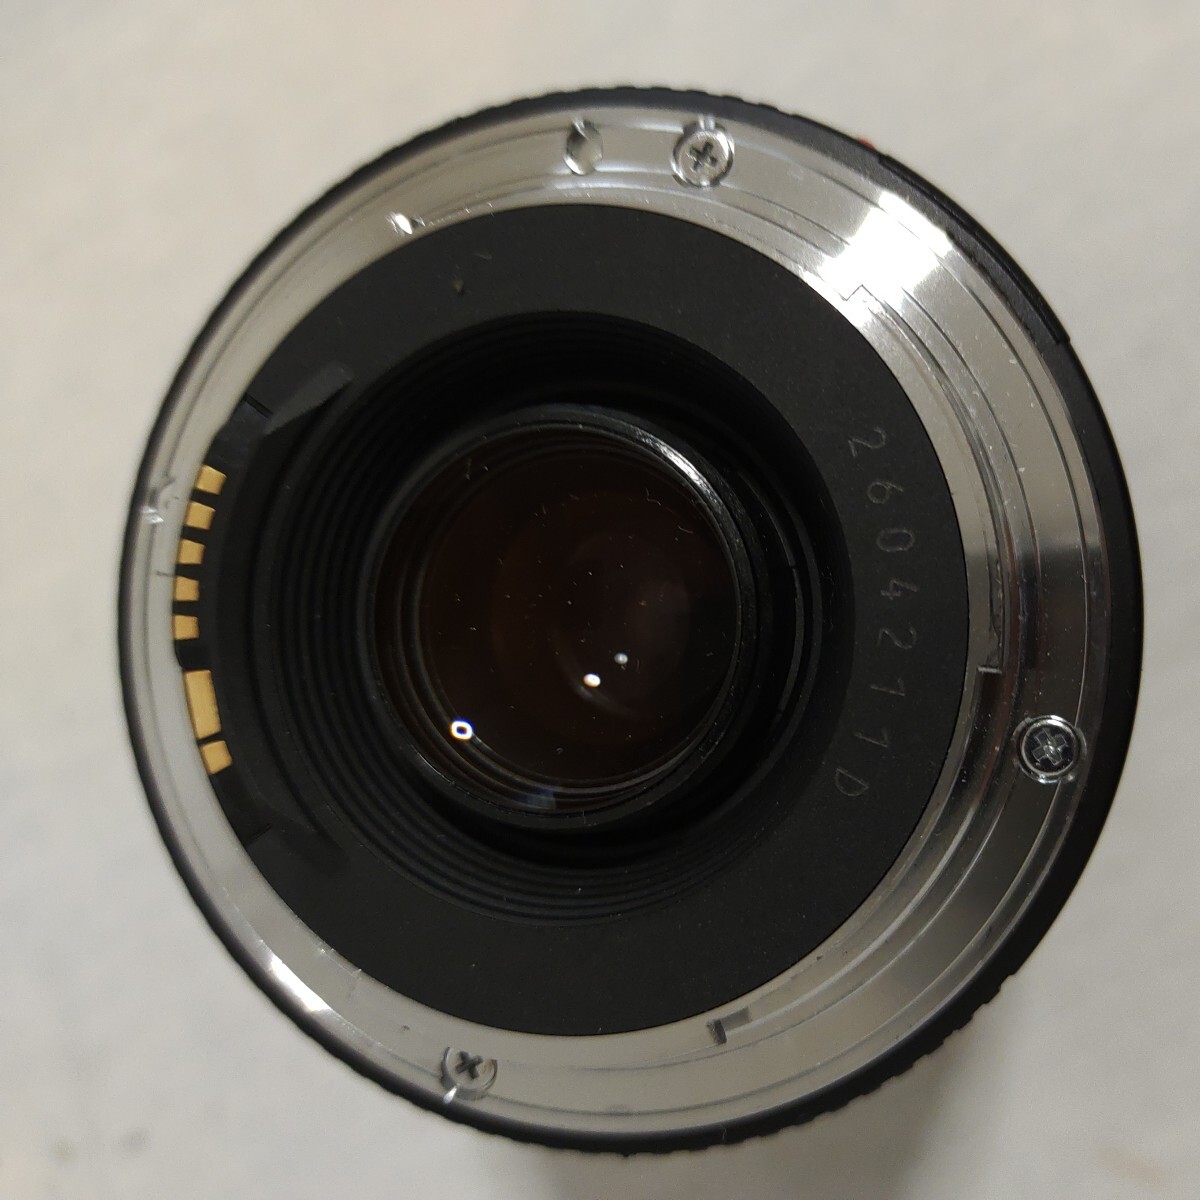 F042 Canon135mm F2.5 MACRO 28-105mm F3.5-4.5 Tokina 80-200mm F2.8 canon 75-300mm F4-5.6 カメラレンズ レンズ_画像7